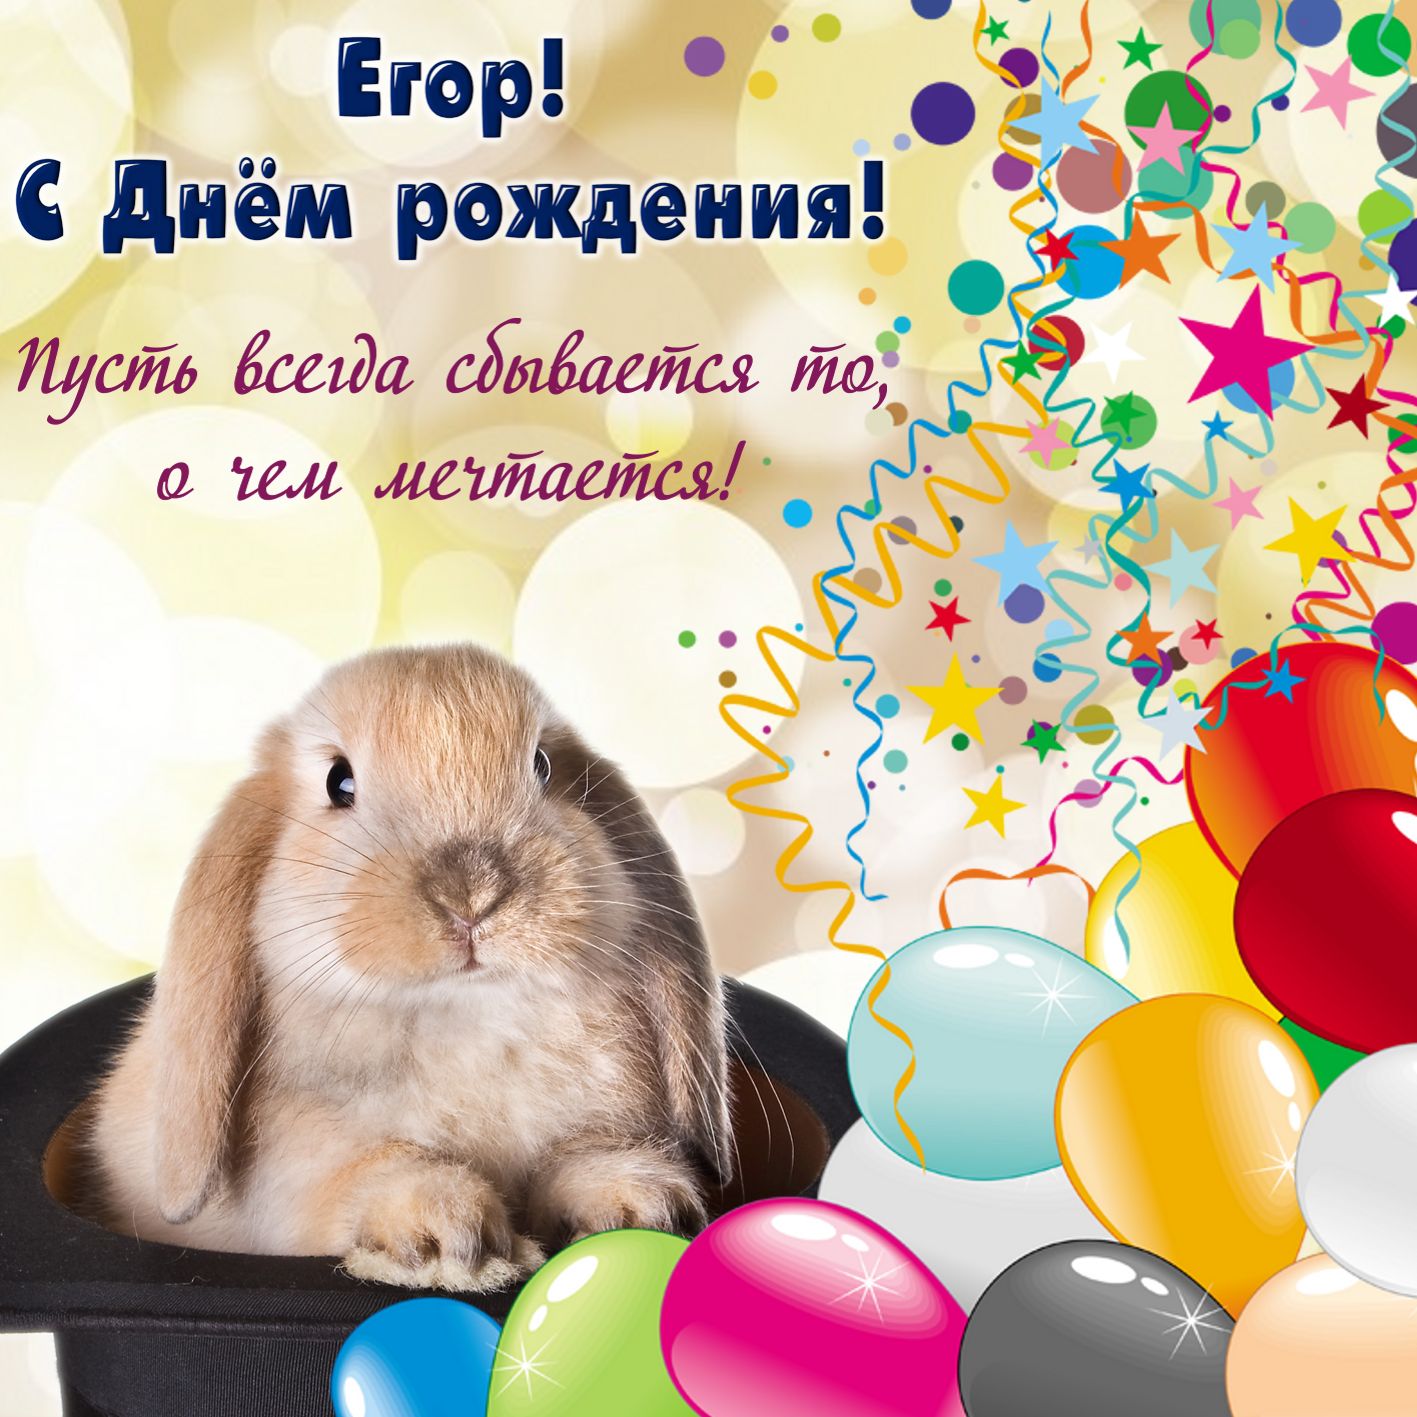 Поздравления На День Рождения Егору